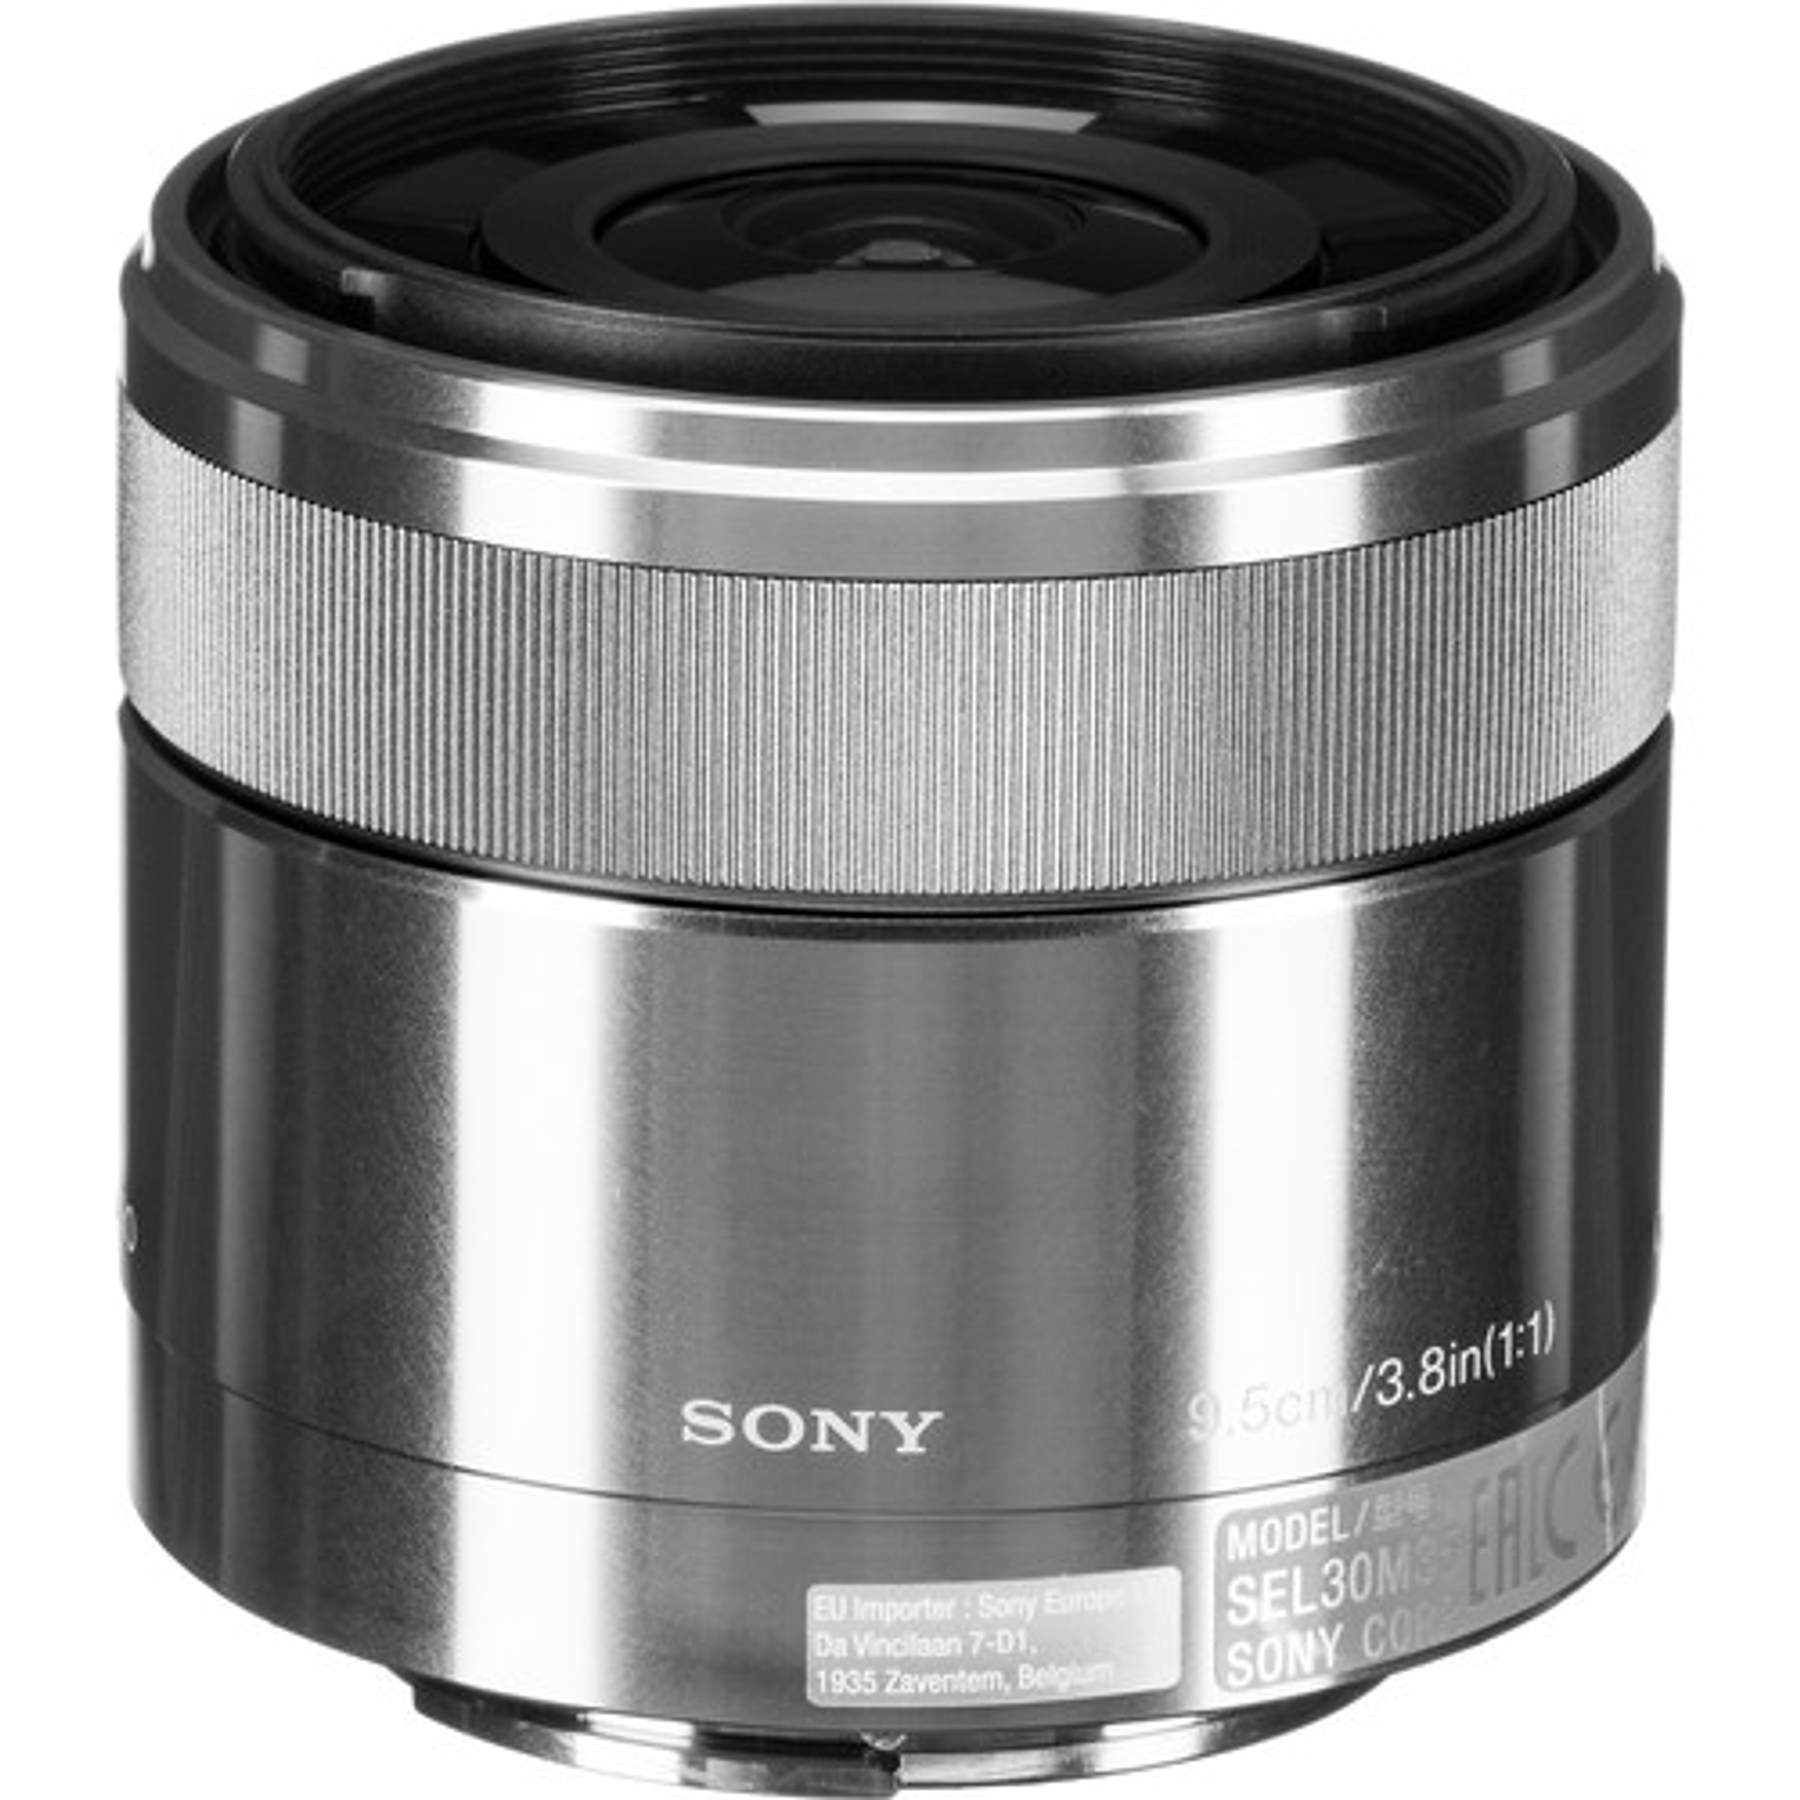 Sony 30mm f3.5 Macro E